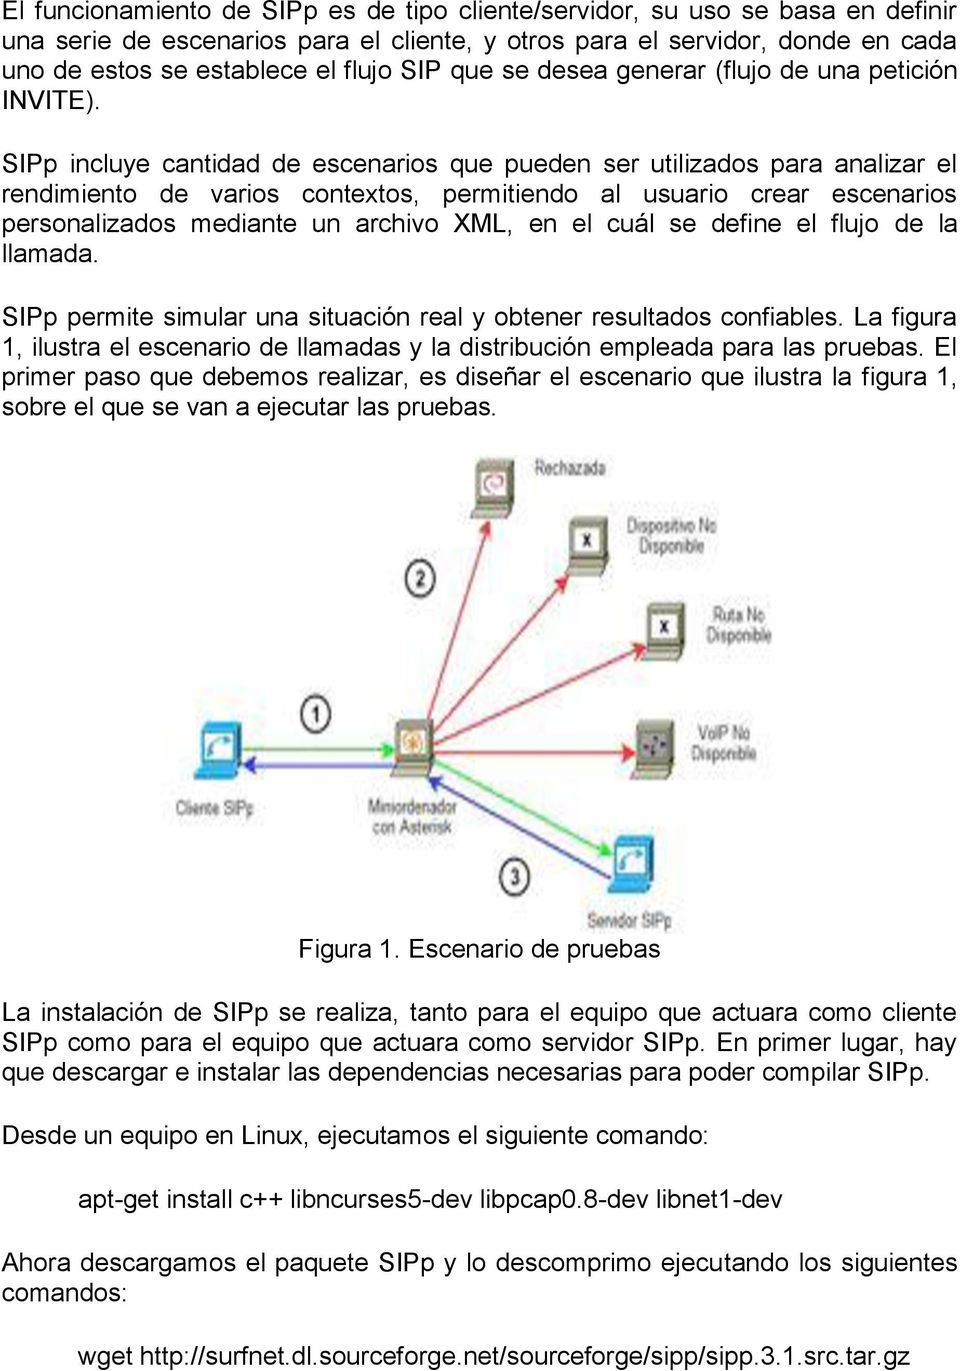 SIPp incluye cantidad de escenarios que pueden ser utilizados para analizar el rendimiento de varios contextos, permitiendo al usuario crear escenarios personalizados mediante un archivo XML, en el